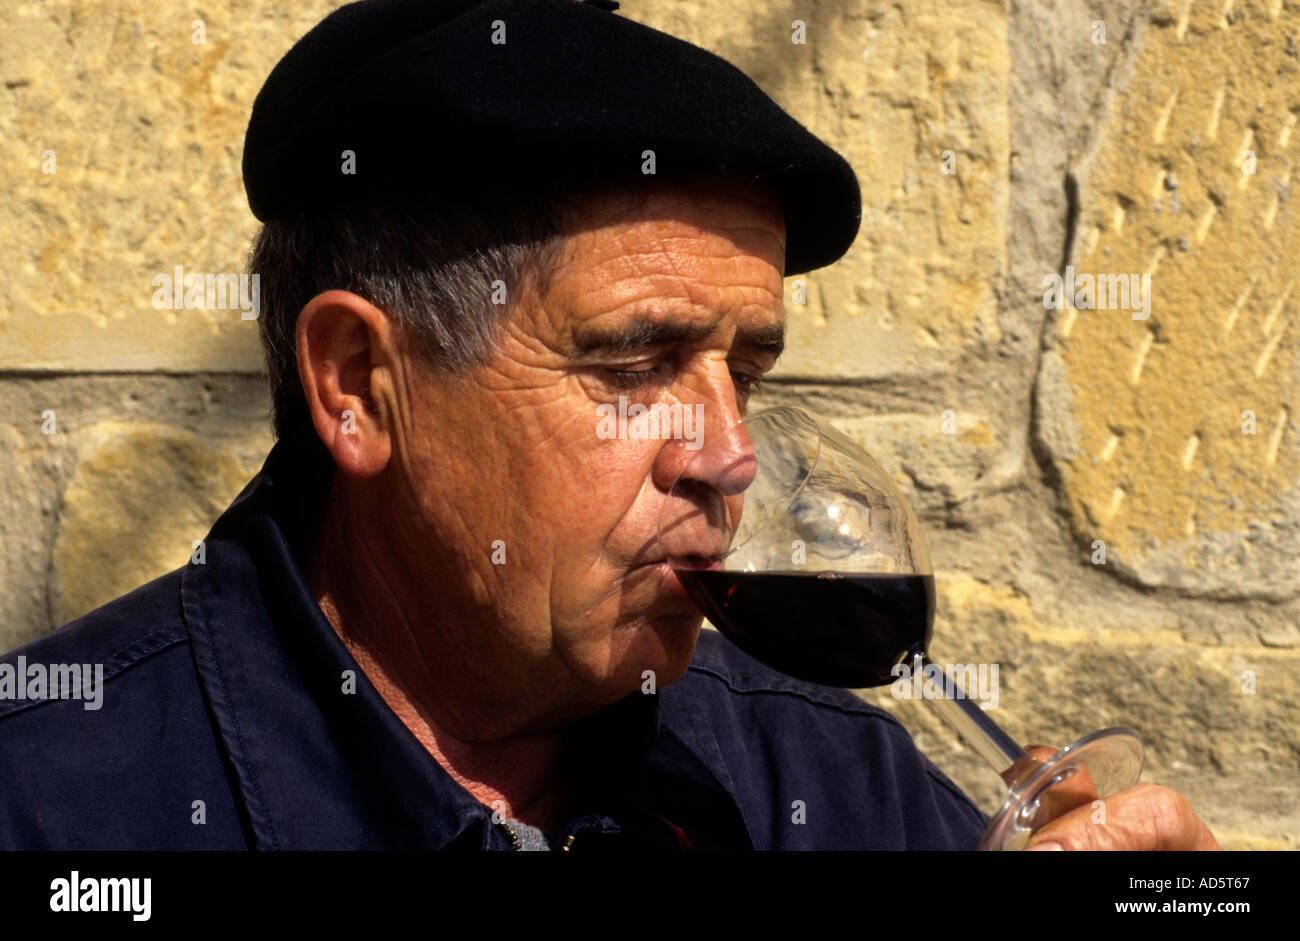 Rioja Spanien spanischer Mann Geschmack Test Probe Glas Wein Verkostung roten Baskenmütze haben nehmen Trinker Toper Säufer Stockfoto